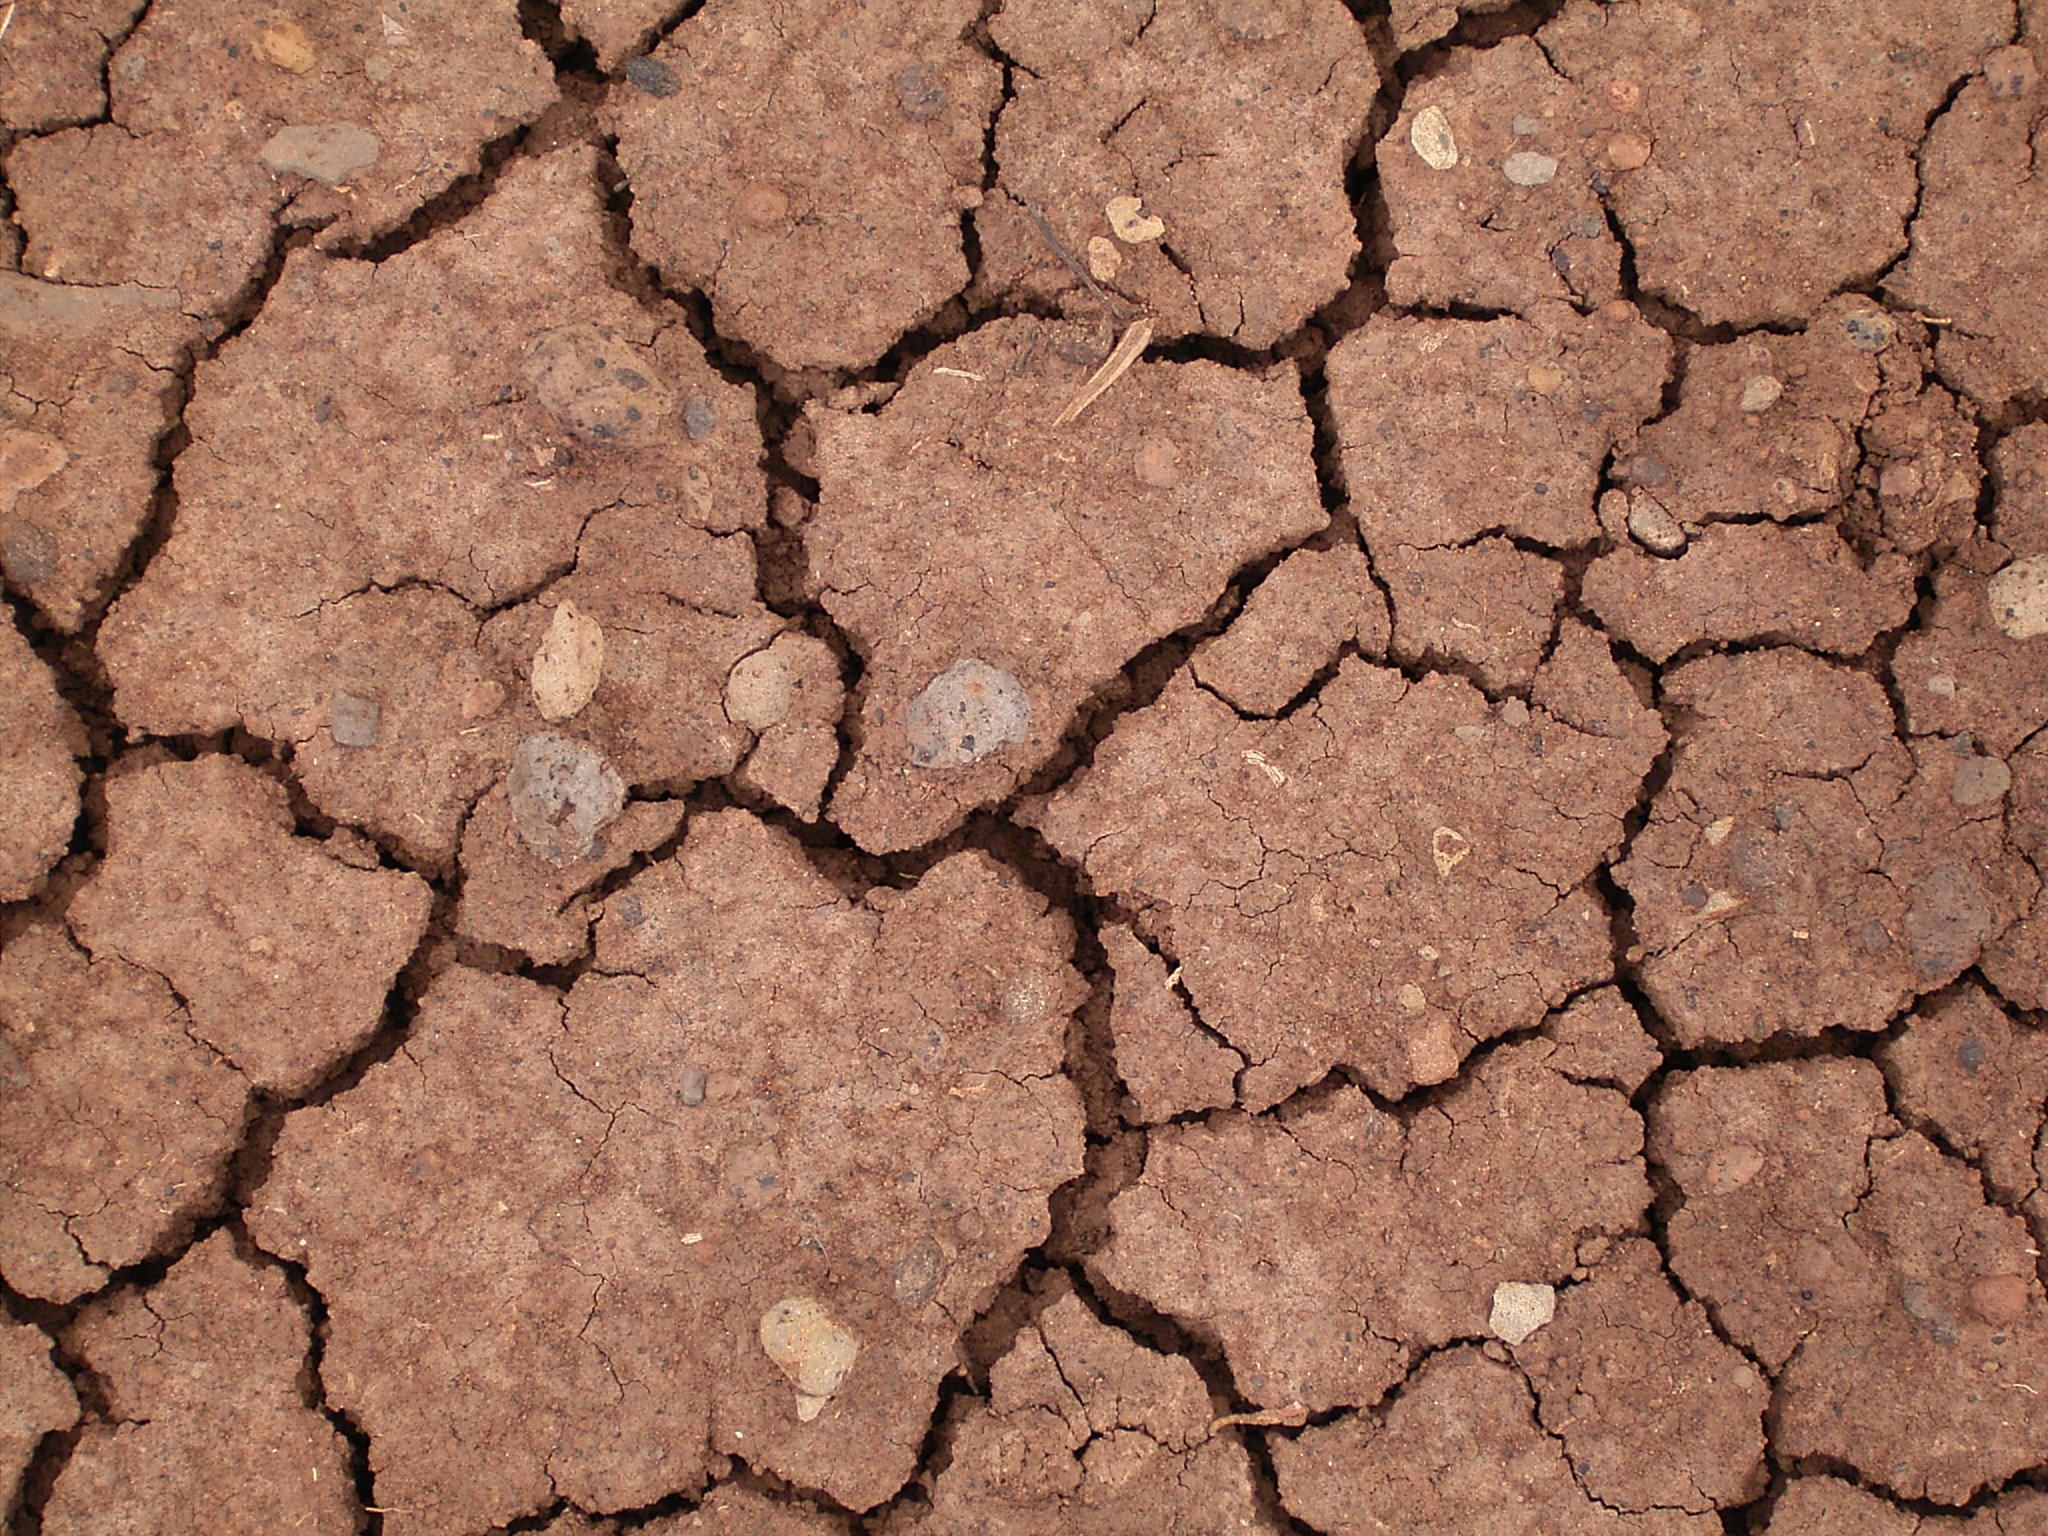 File:Dried mud (La Fajana) 01 ies.jpg - Wikimedia Commons